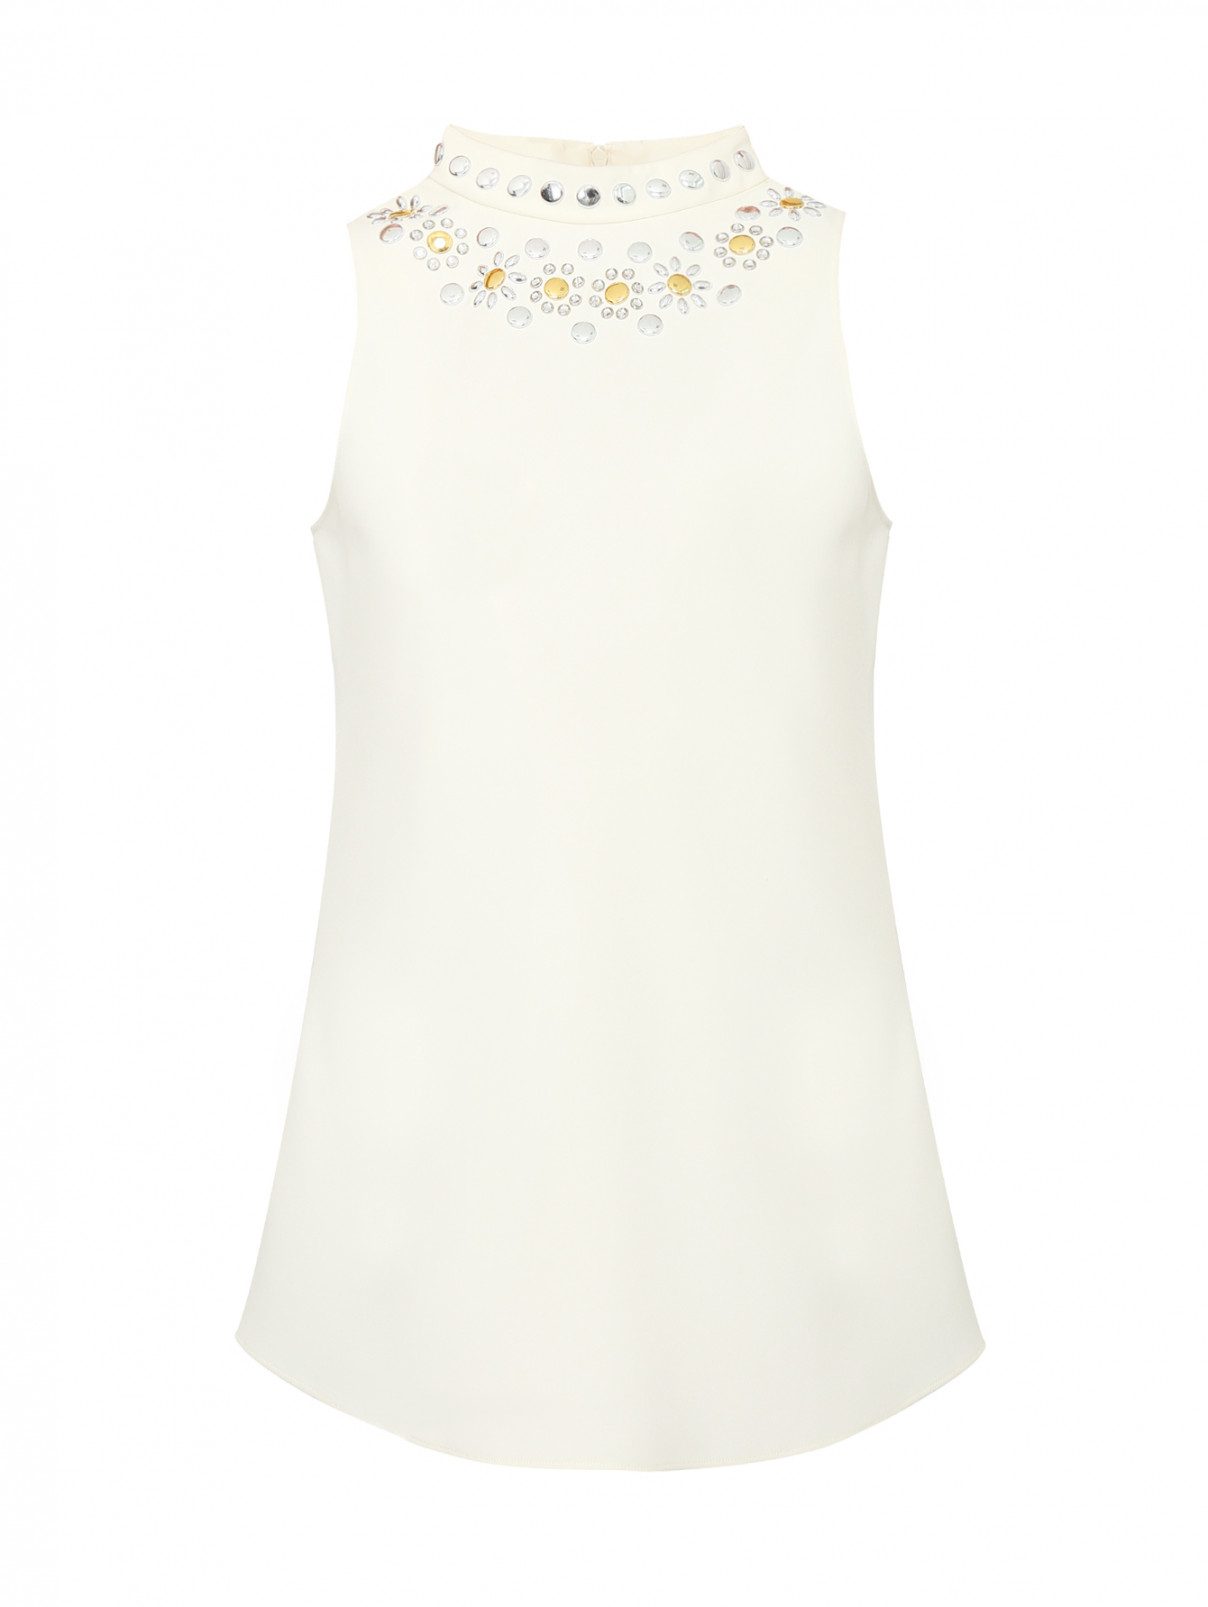 Удлиненная блуза с декором Moschino Cheap&Chic  –  Общий вид  – Цвет:  Белый